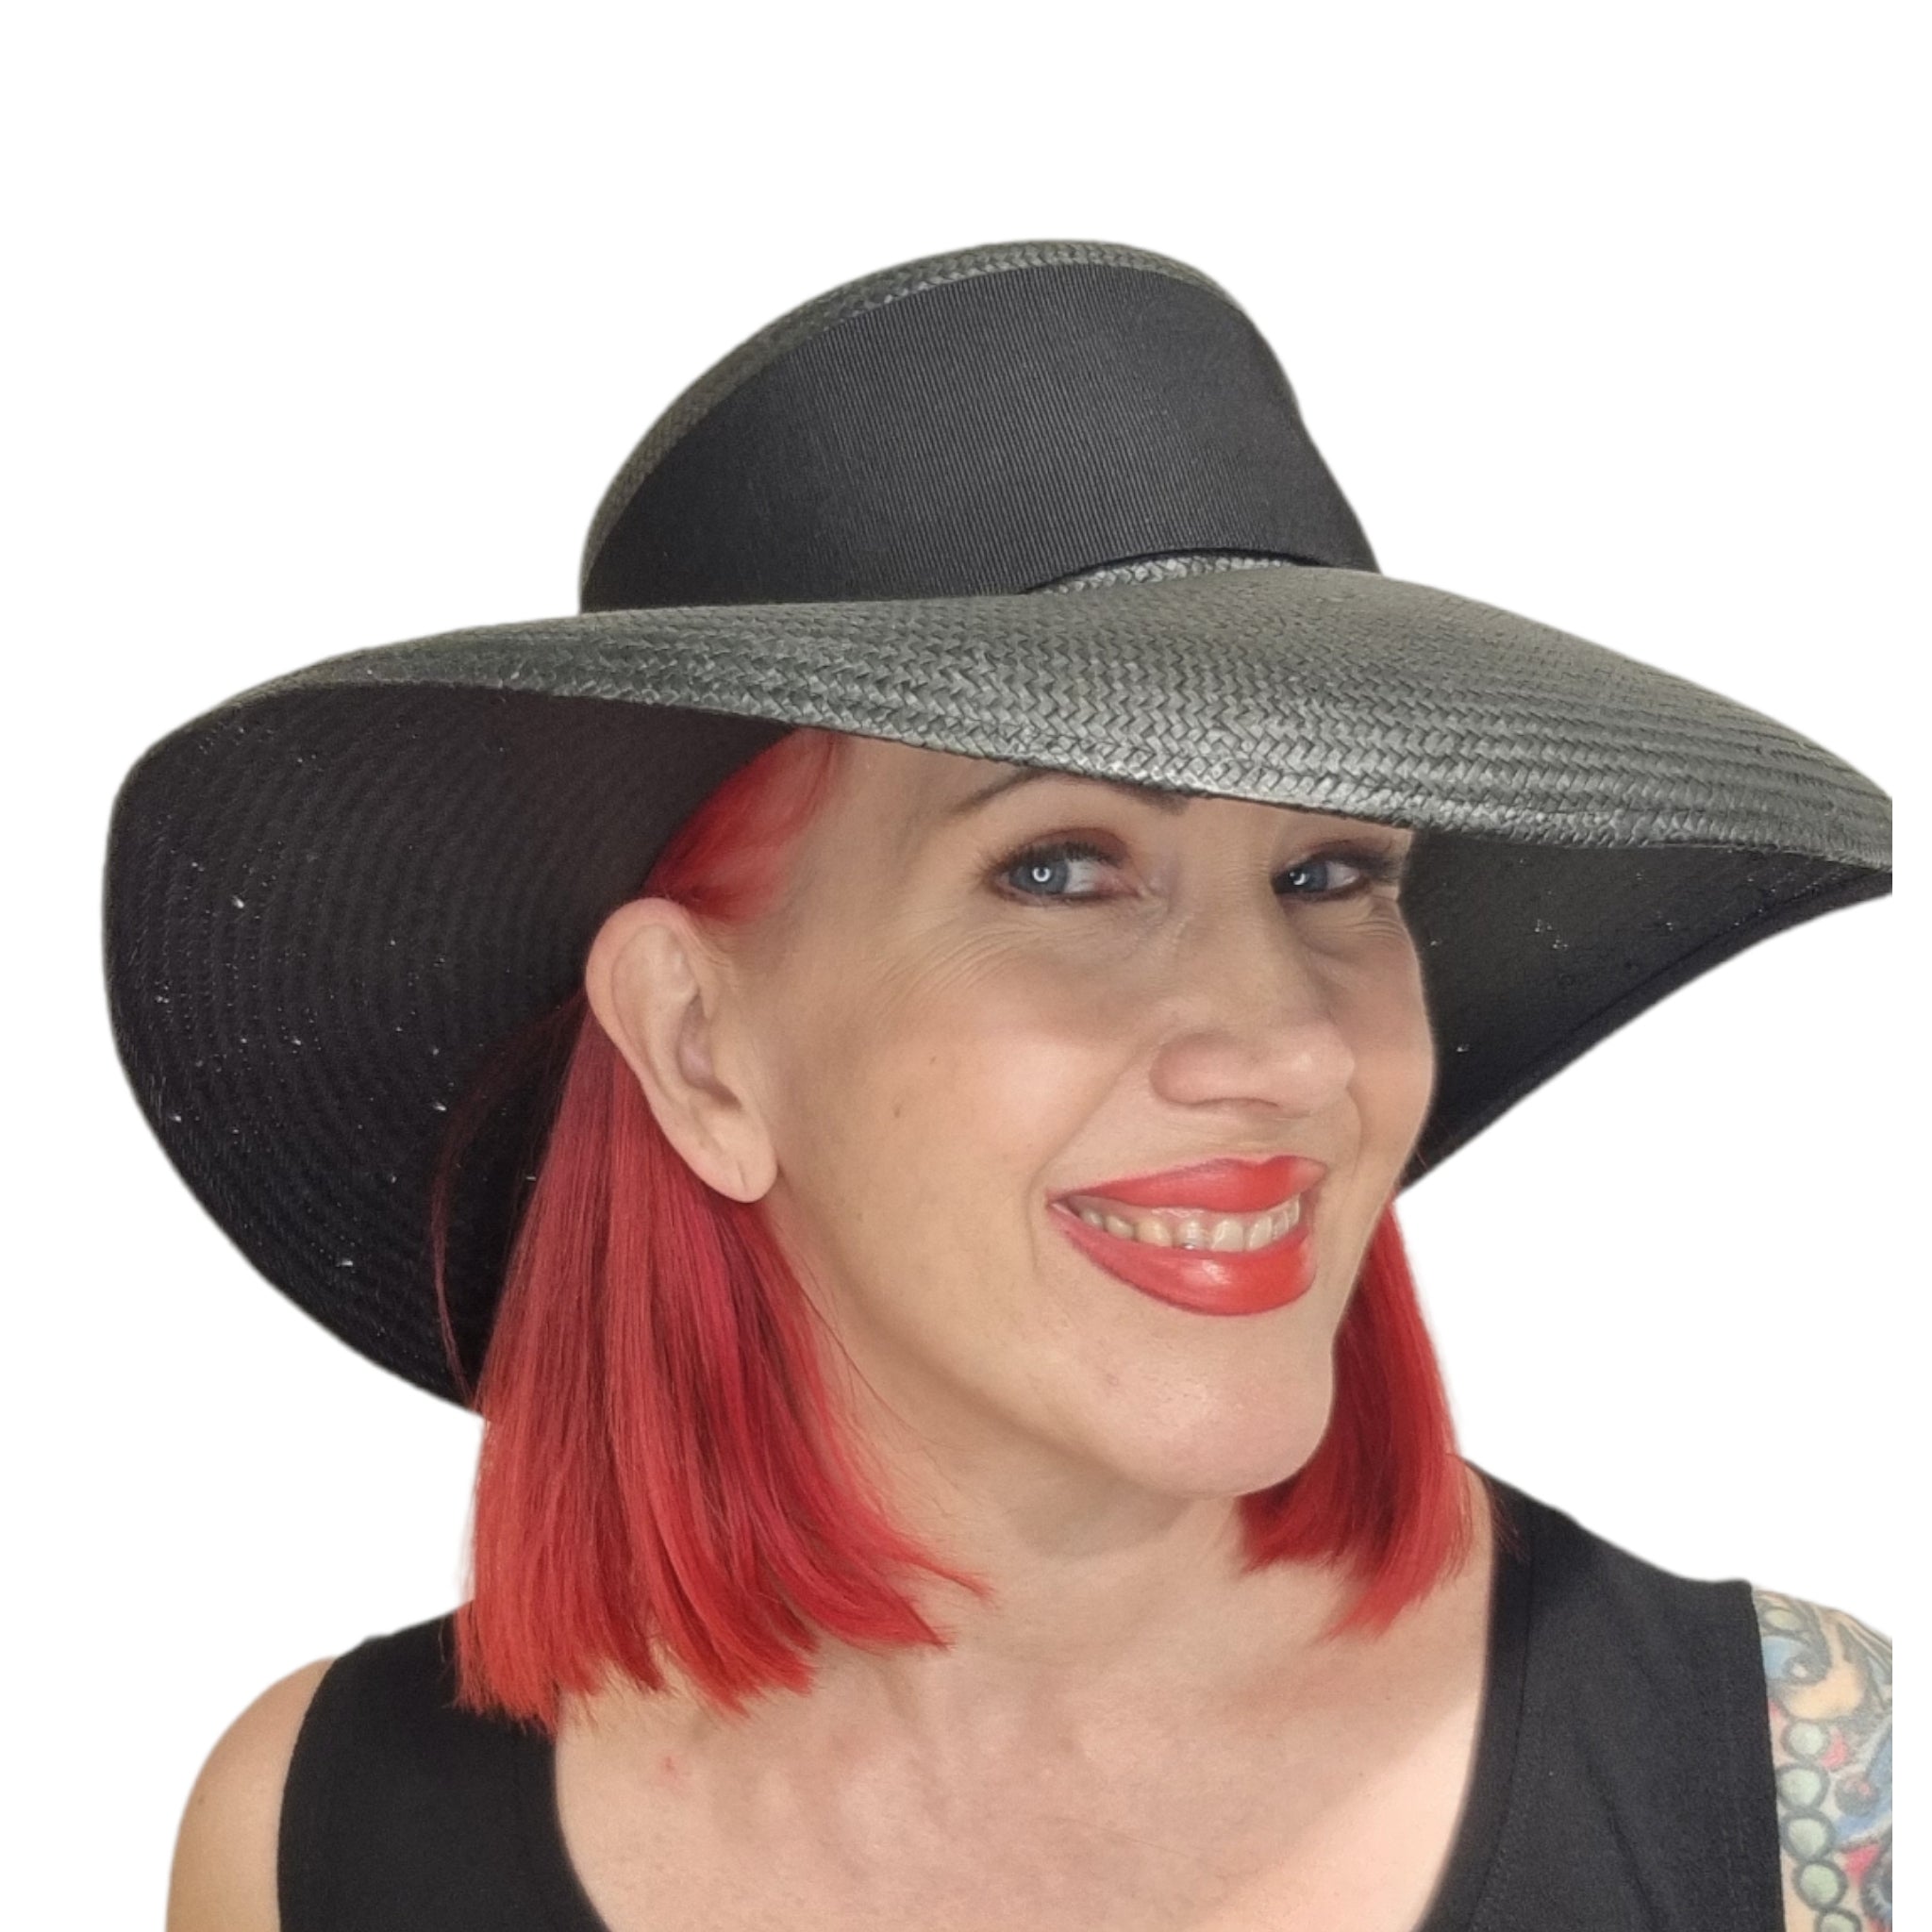 Kati Niemi, musta, leveälierinen hattu. Hatussa on leveä musta ripsinauha ja rusetti. Kuva mallin päässä.